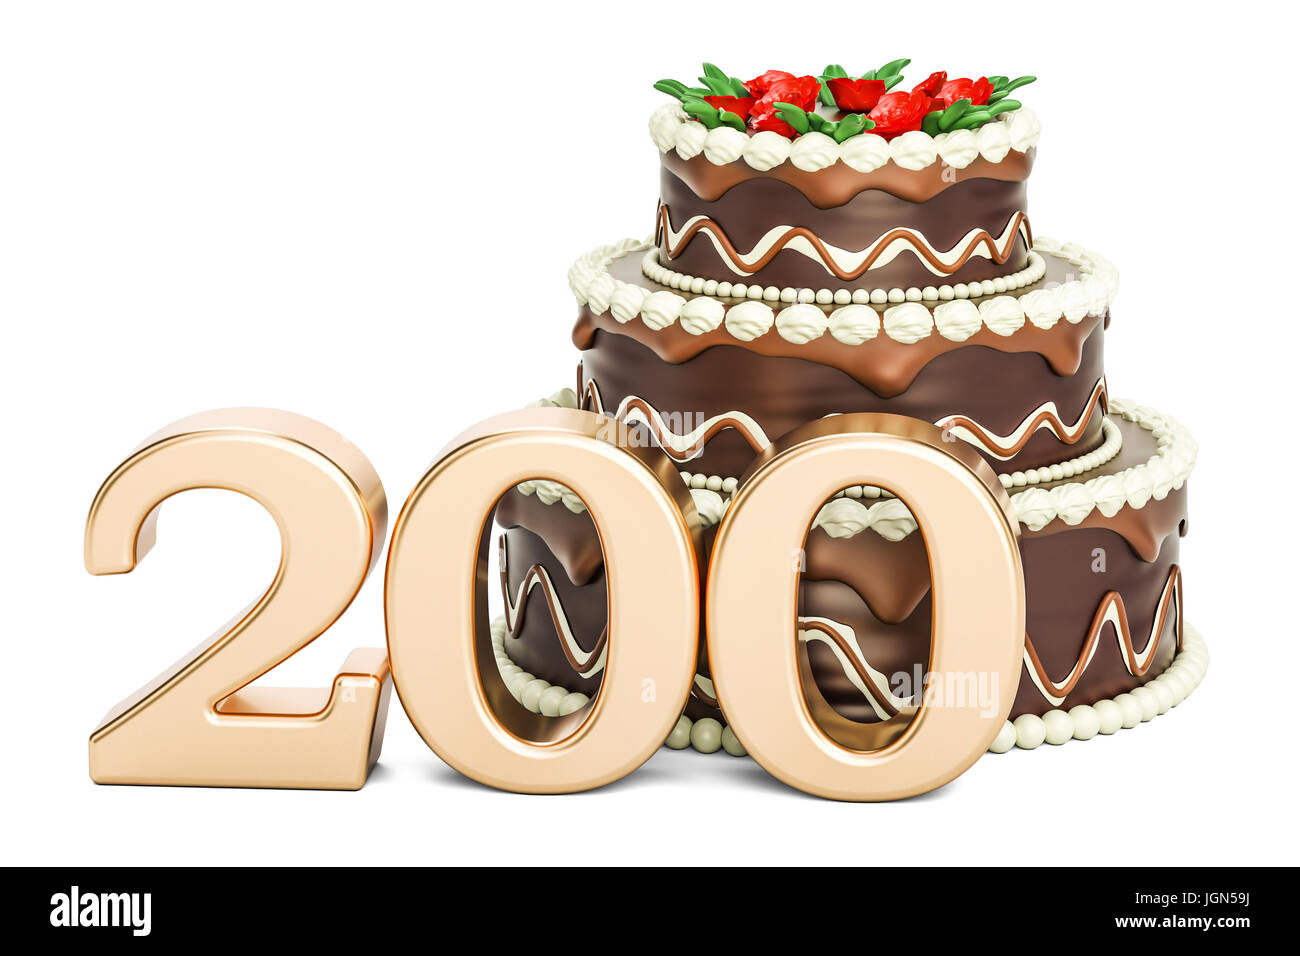 Gâteau au chocolat avec nombre d'or 200, 3D Rendering isolé sur fond blanc Banque D'Images